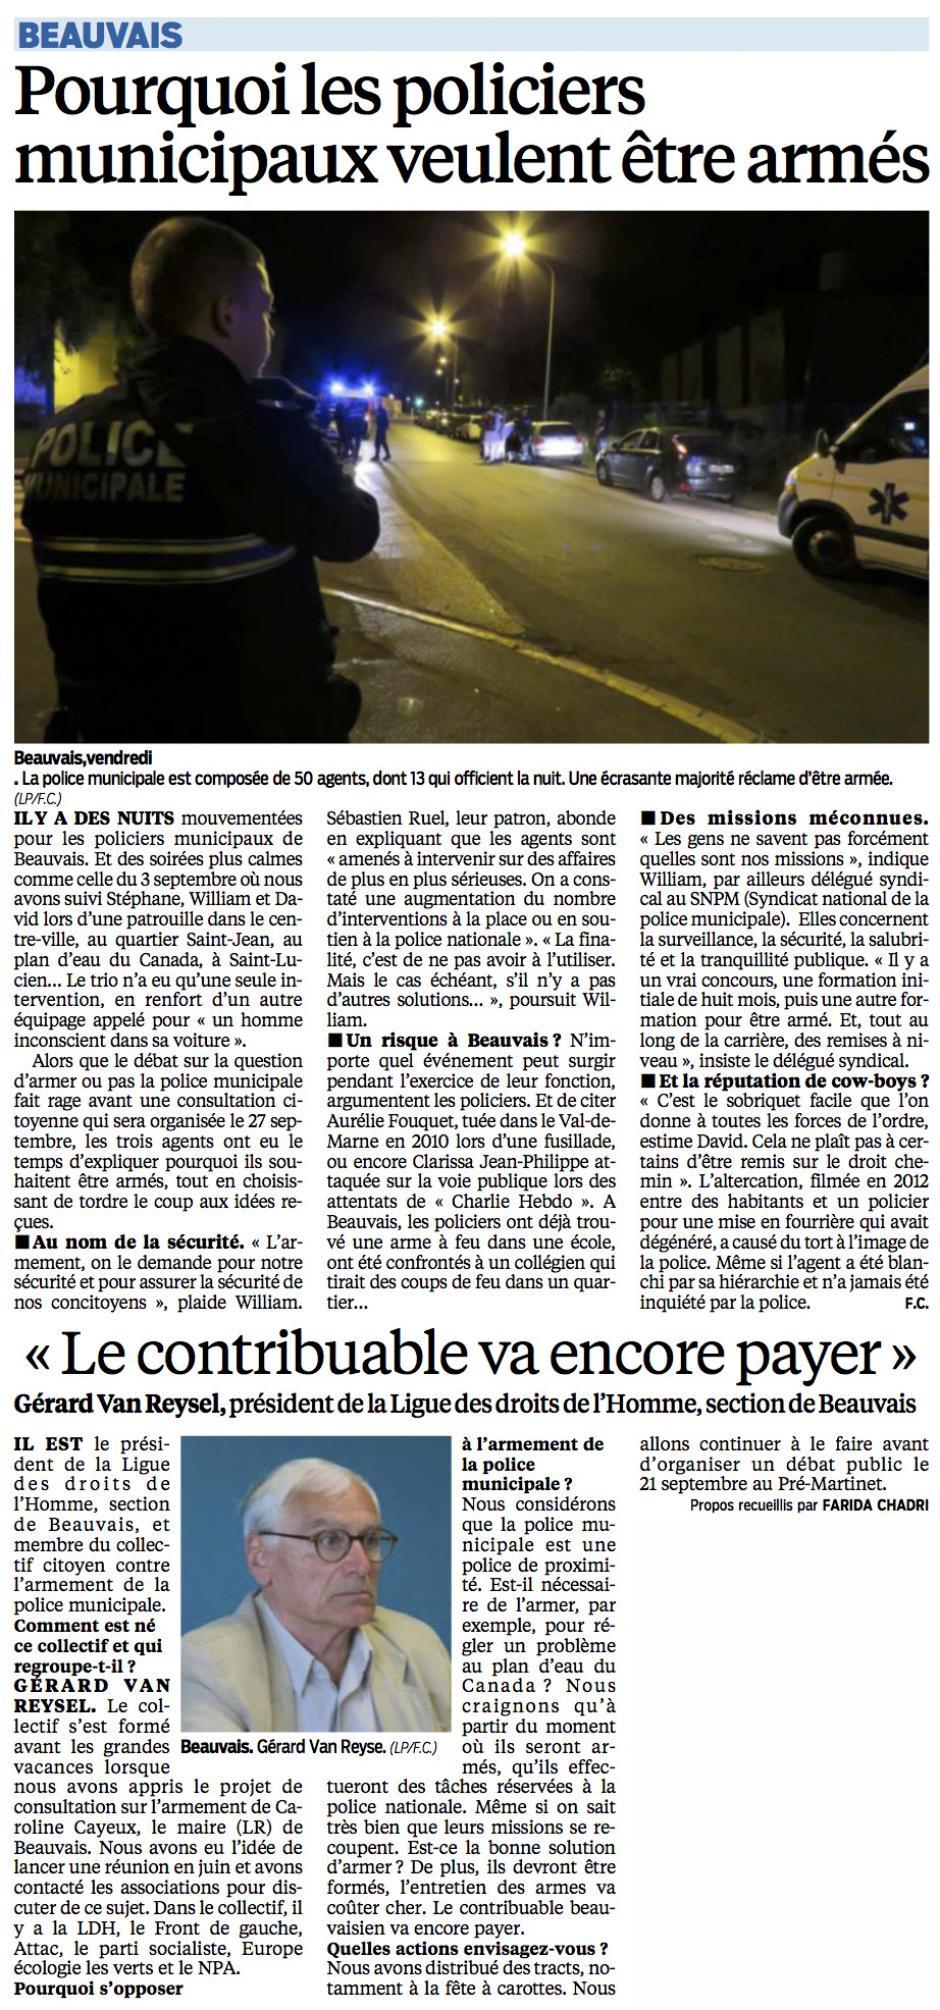 20150909-LeP-Beauvais-Pourquoi les policiers municipaux veulent être armés - LDH « Le contribuable va encore payer »